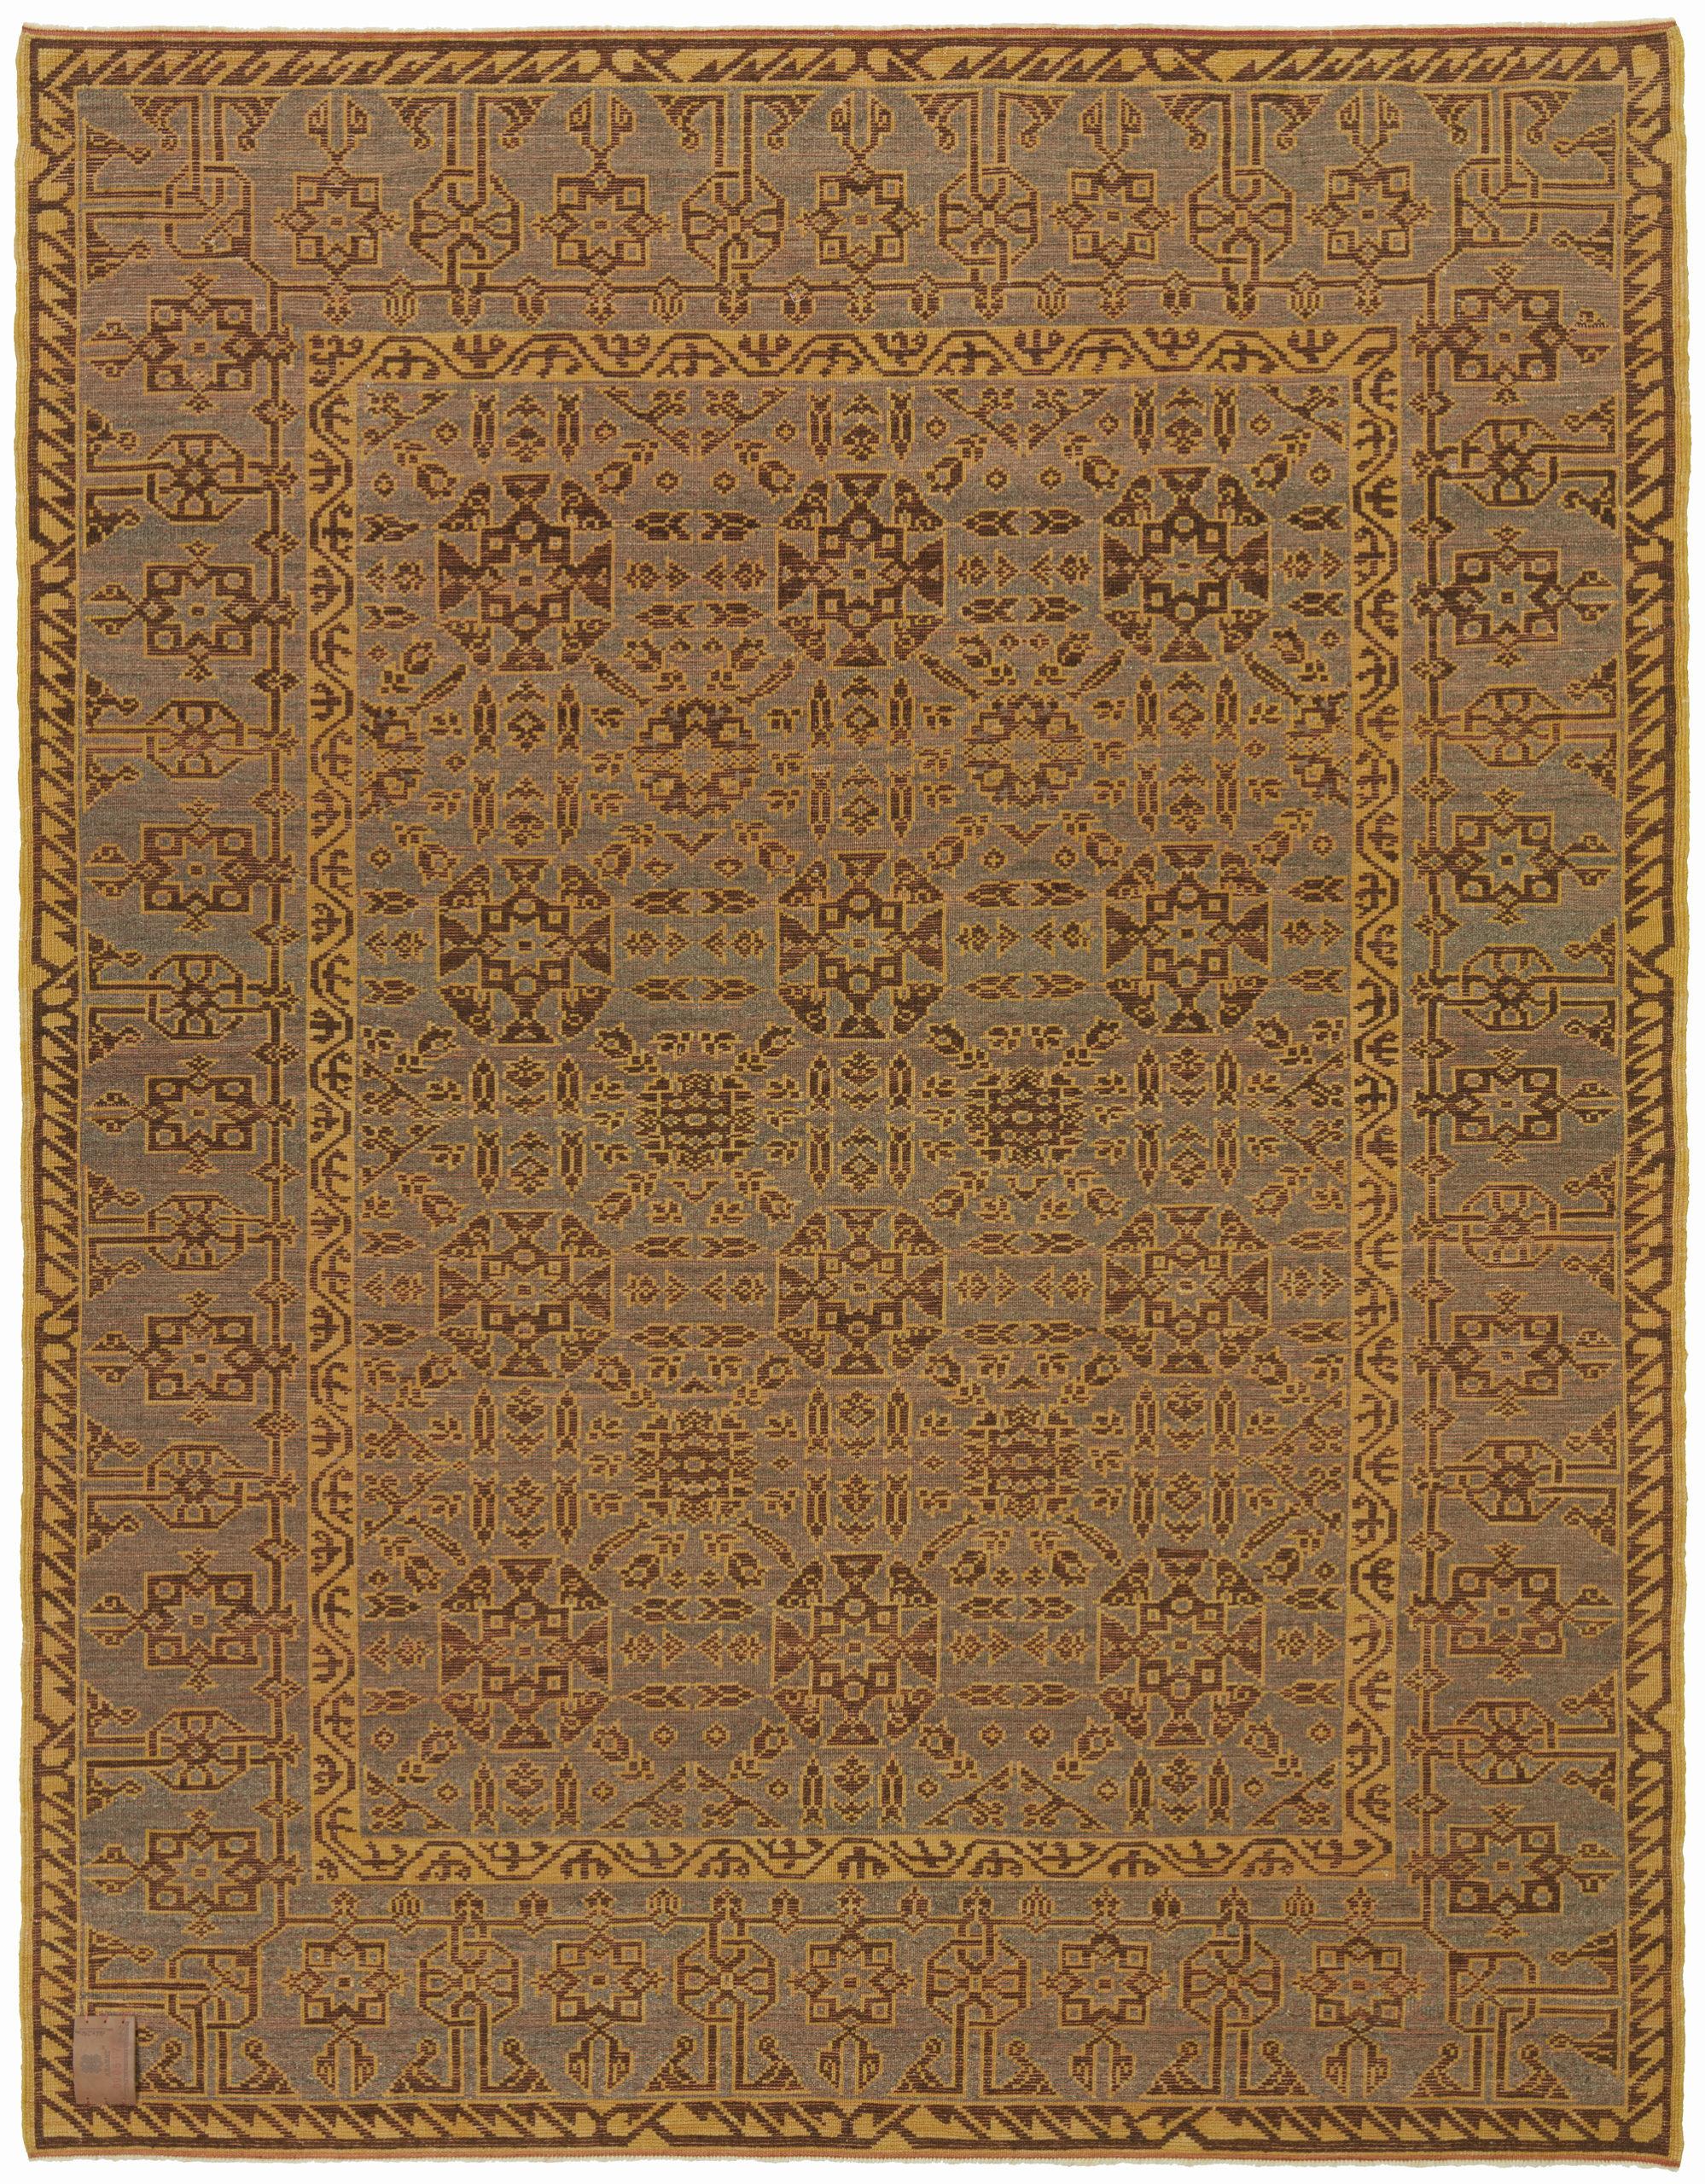 Le motif du tapis provient du livre Turkish Carpets from the 13th - 18th centuries, Ahmet Ertuğ, 1996 pl.9. Ce tapis du XIIIe siècle provient de la mosquée Ulu, de la région de Design/One Sivas, en Anatolie centrale. La période seldjoukide marque